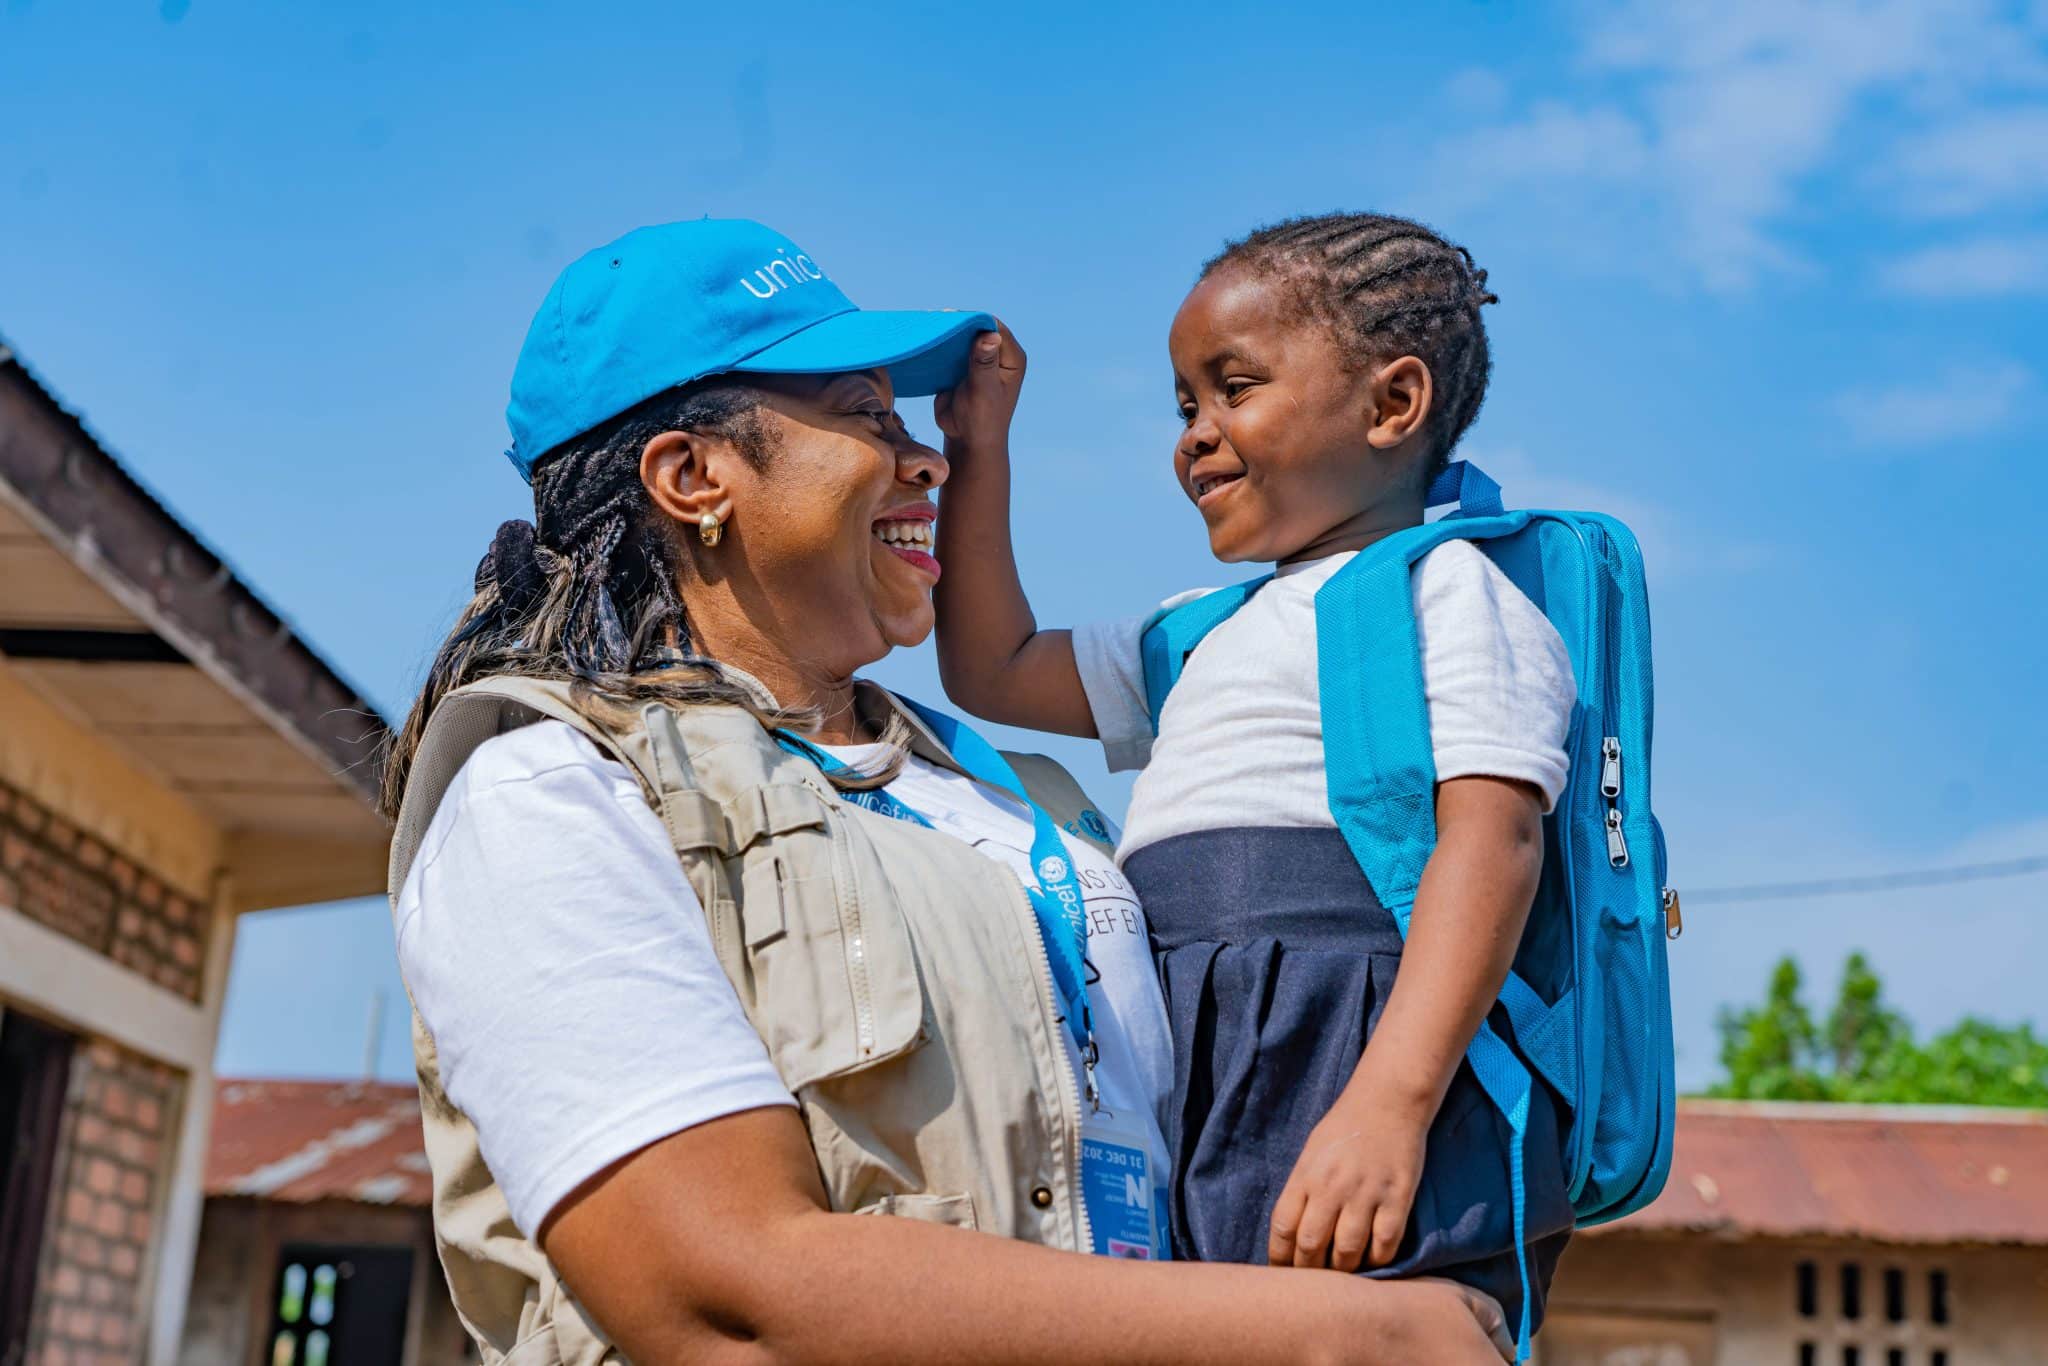 Le 12 octobre 2023, en RDC, Nkembo, 7 ans, joue avec Solange Nabintu Murhega, membre du personnel de l'UNICEF à Kinshasa. La petite fille vient de recevoir un kit scolaire de l'UNICEF. © UNICEF/UNI456462/Mulala